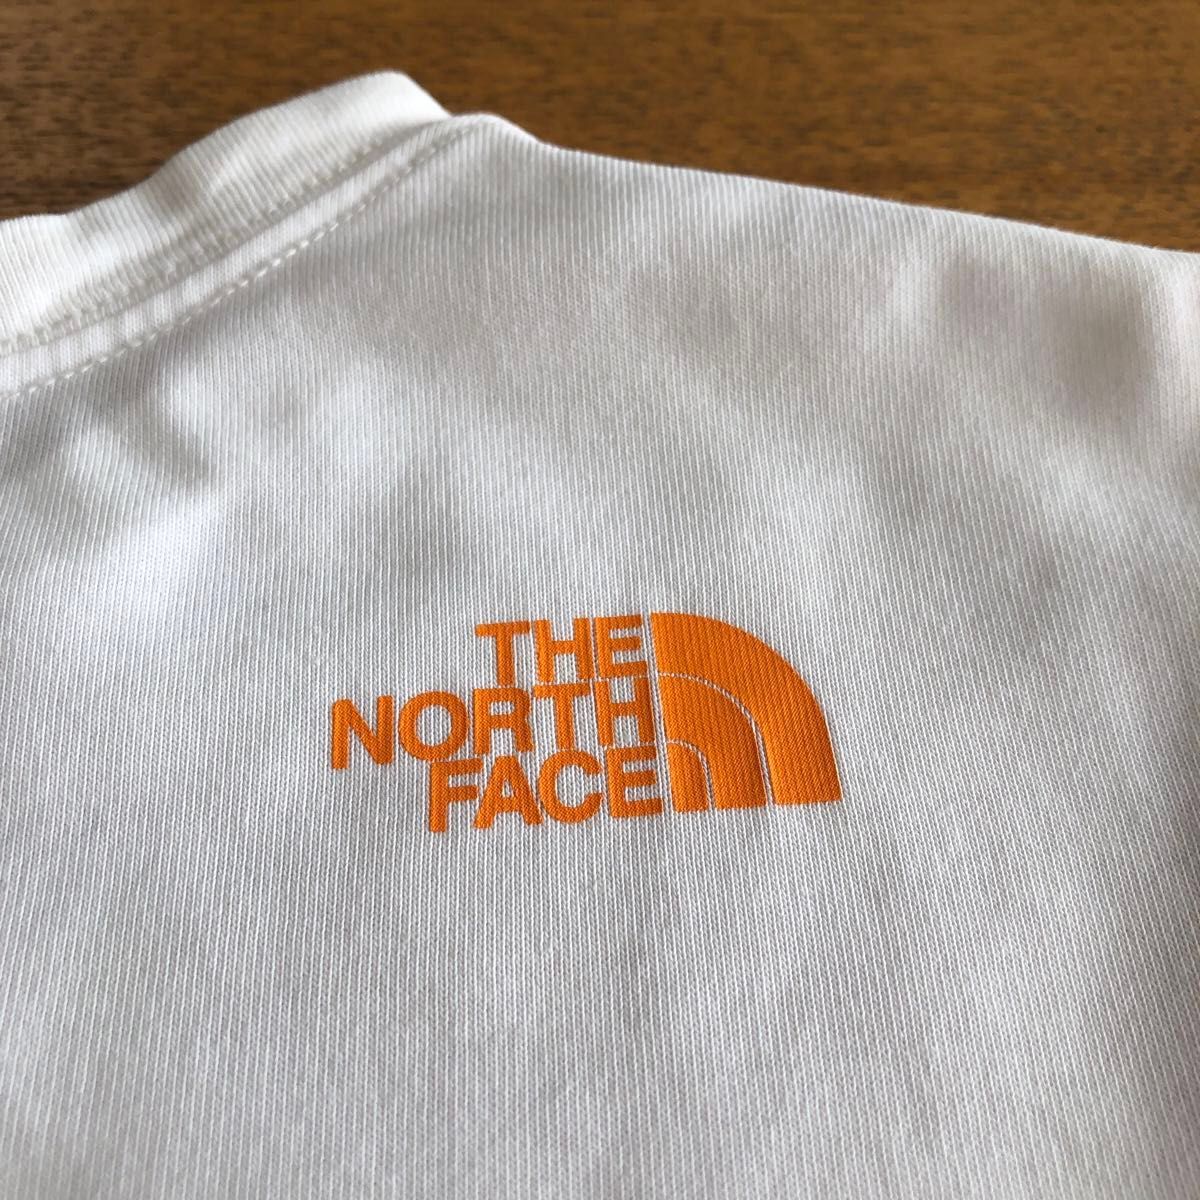 ザノースフェイス　THE NORTH FACE140 まとめ売りTシャツ タンクトップ　ノースリーブ